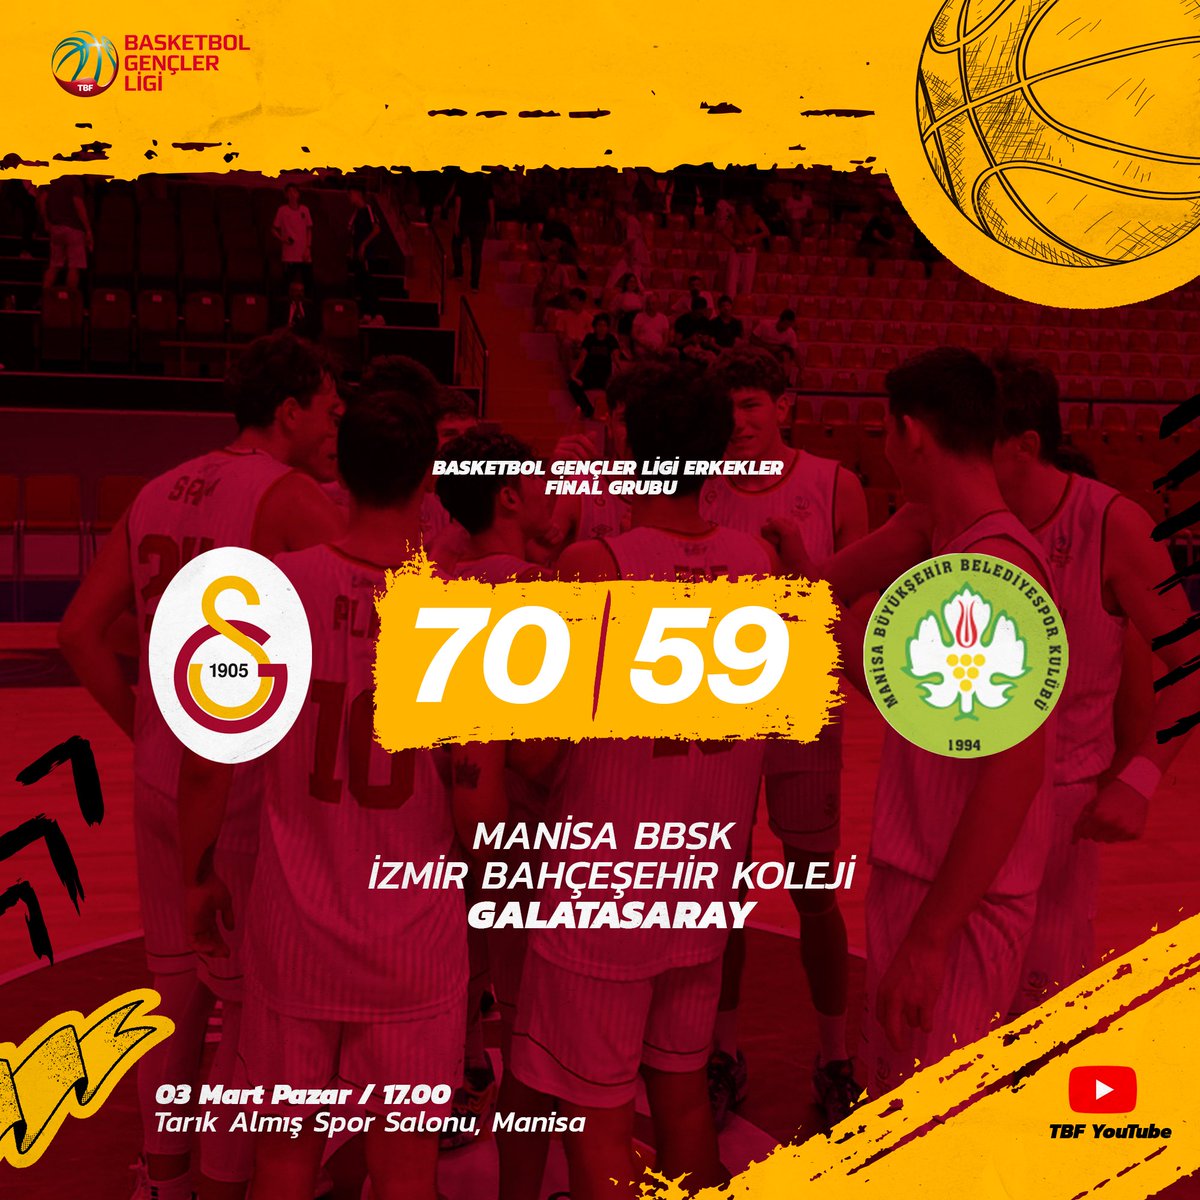 📝 | Basketbol Gençler Ligi Erkekler Final Grubu Galatasaray 70 - 59 Manisa BBSK İzmir Bahçeşehir Koleji #TebriklerÇocuklar 👏